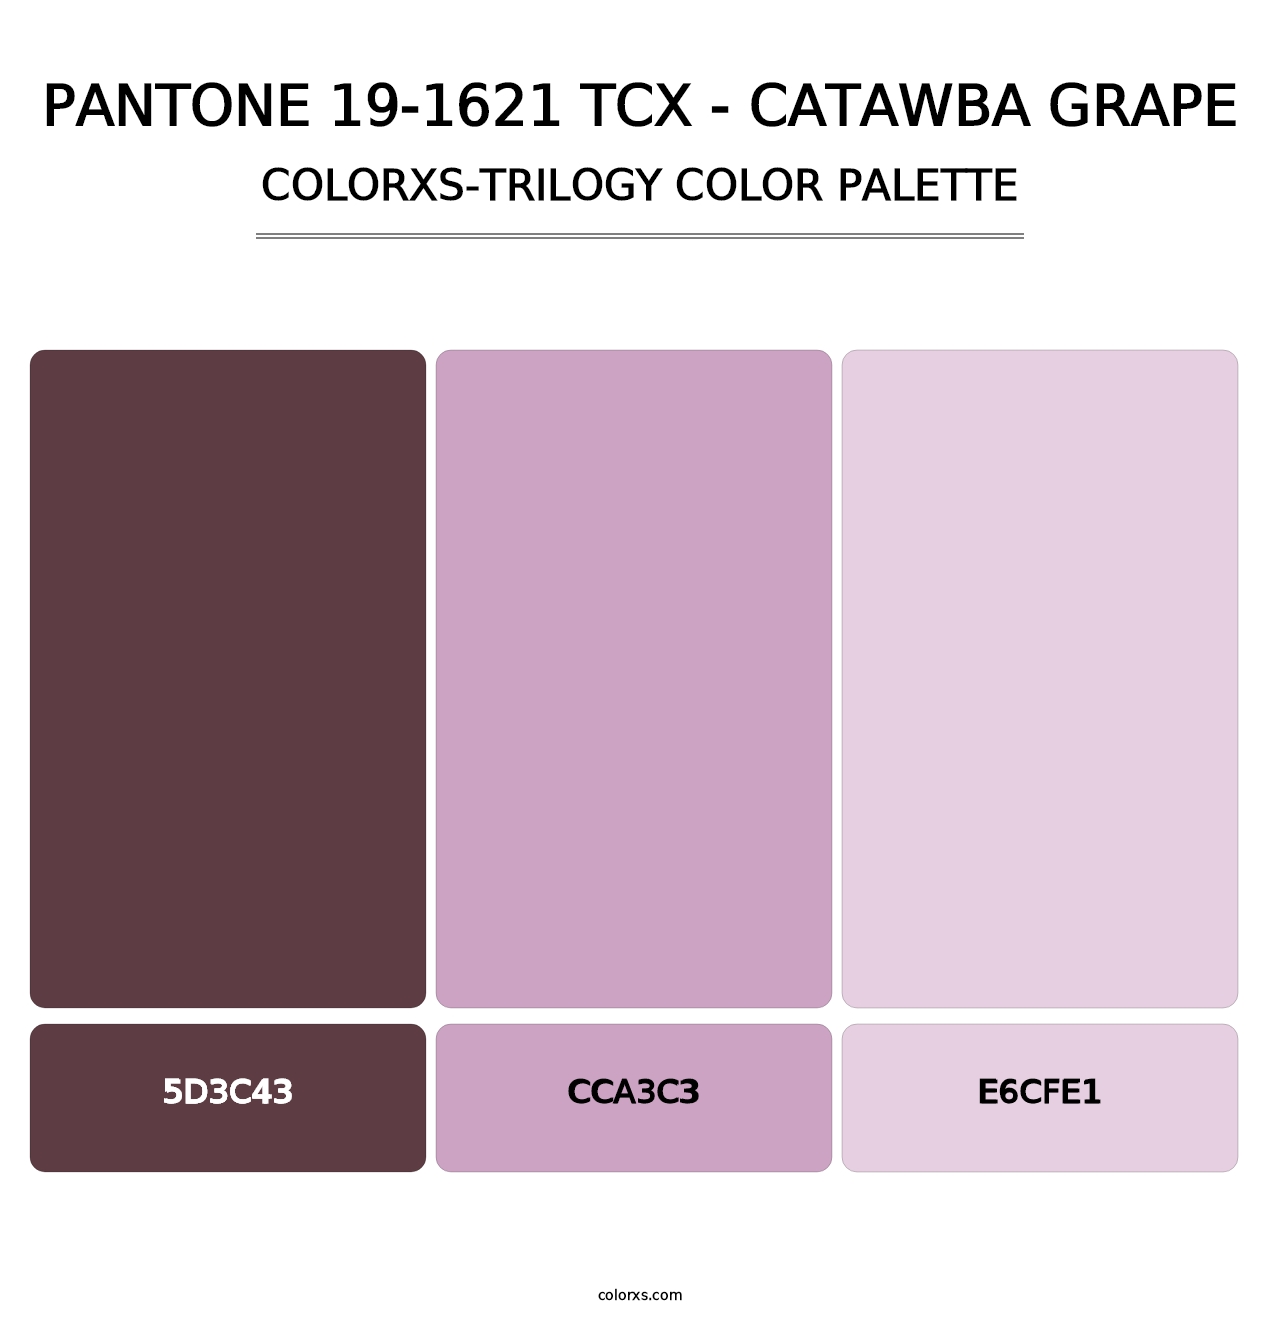 PANTONE 19-1621 TCX - Catawba Grape - Colorxs Trilogy Palette